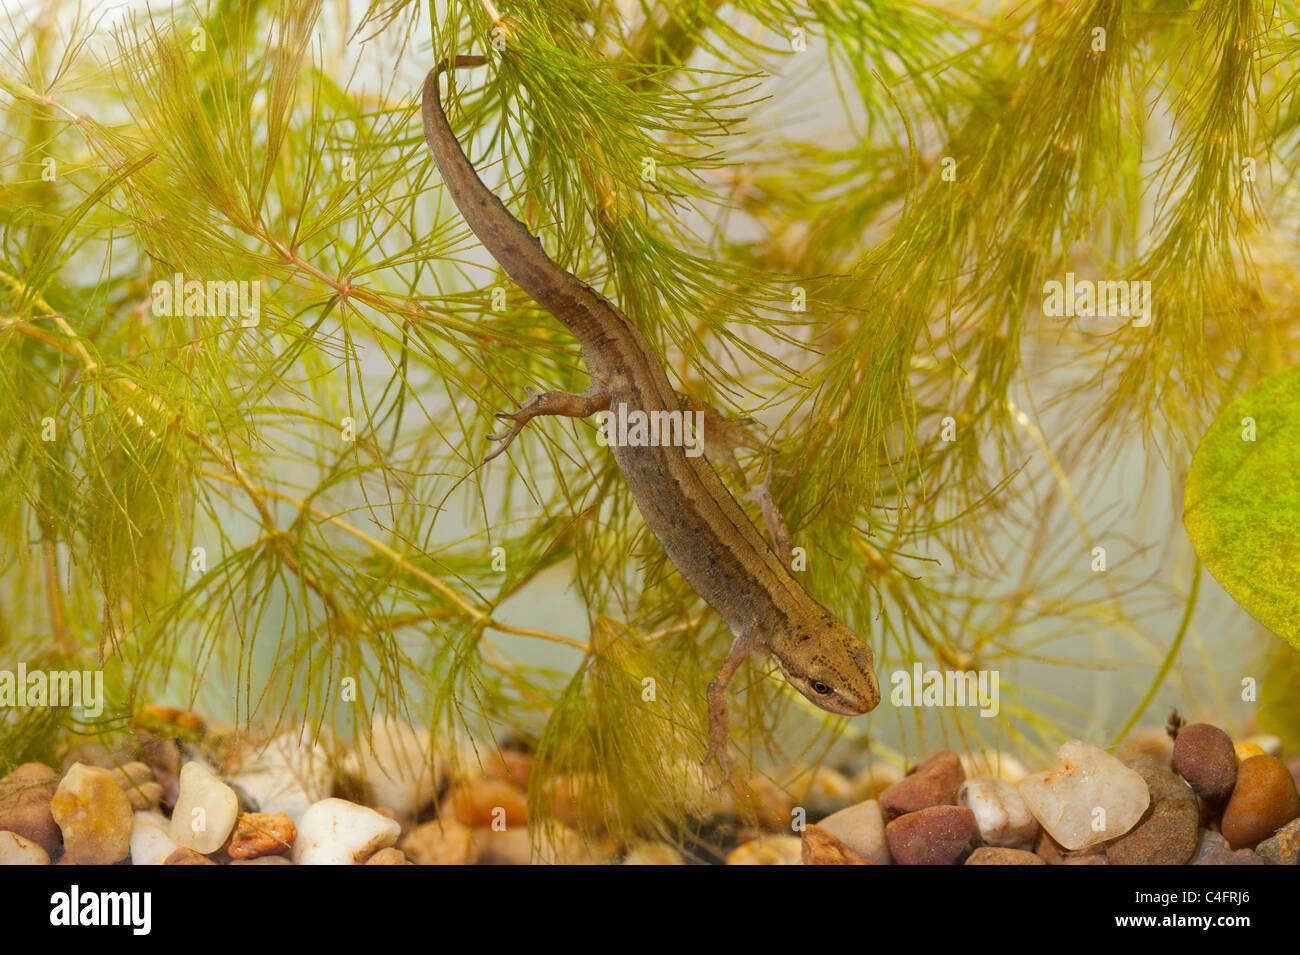 Una femmina di tritone liscio ( Triturus vulgaris ) a nuotare in un acquario nel Regno Unito Foto Stock